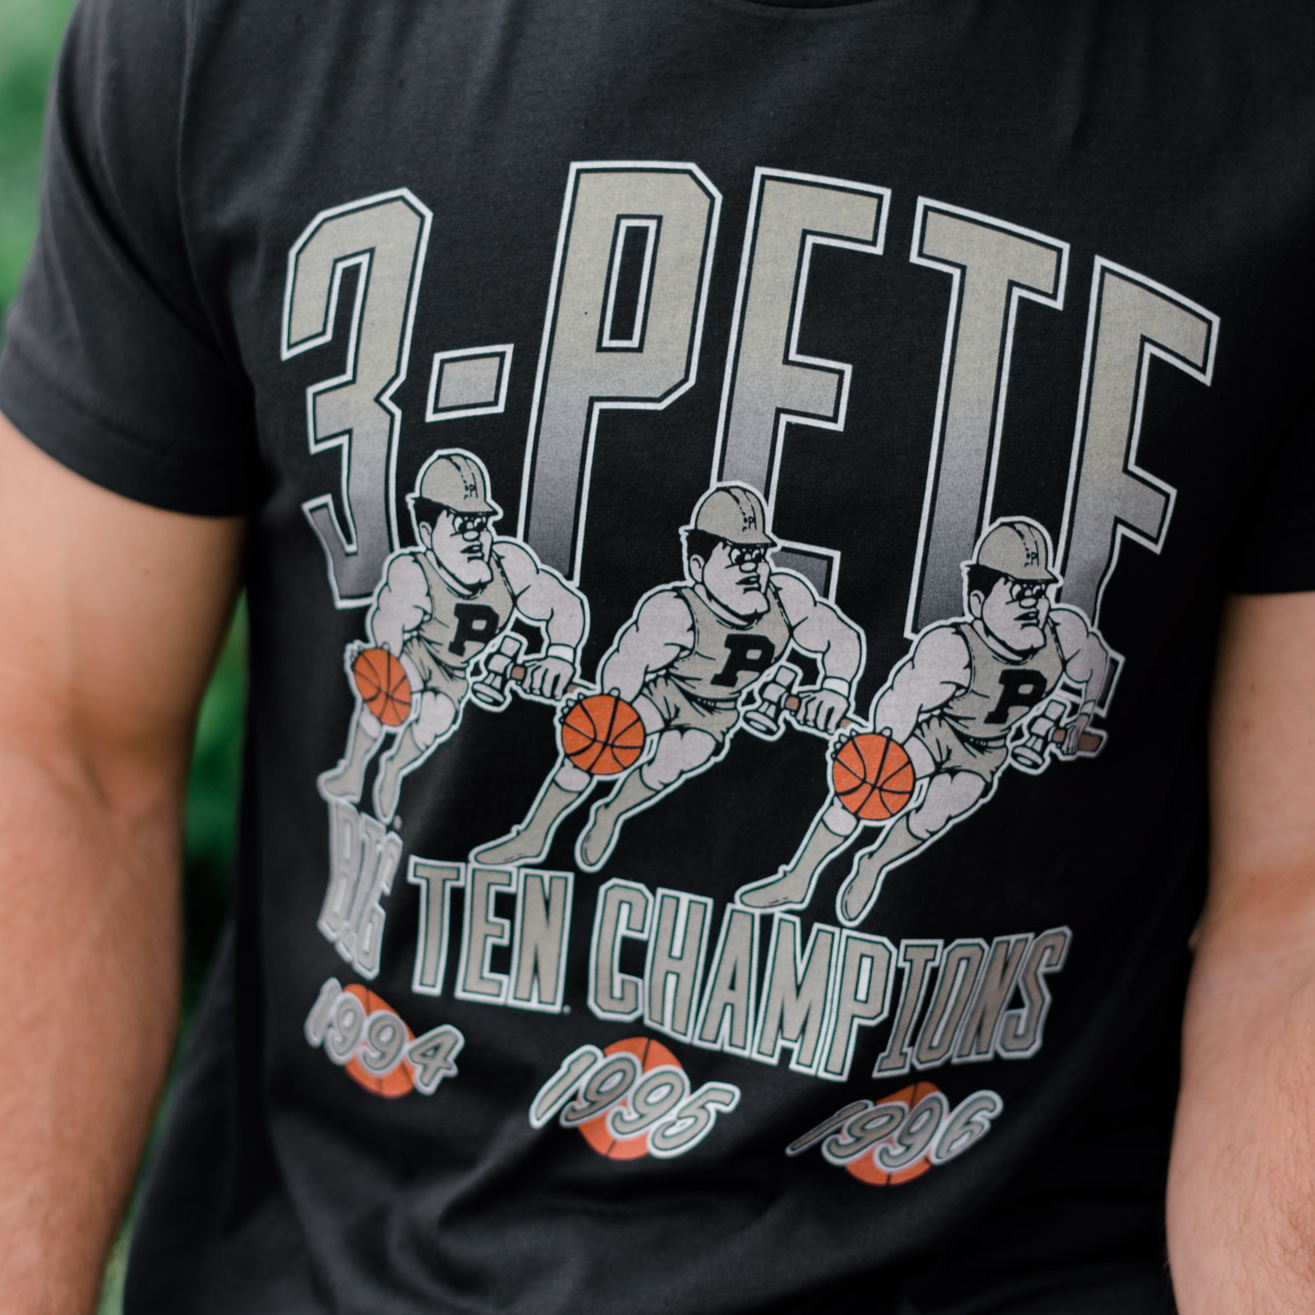 Purdue Boilermakers "3-Pete" Big Ten Champions Tee